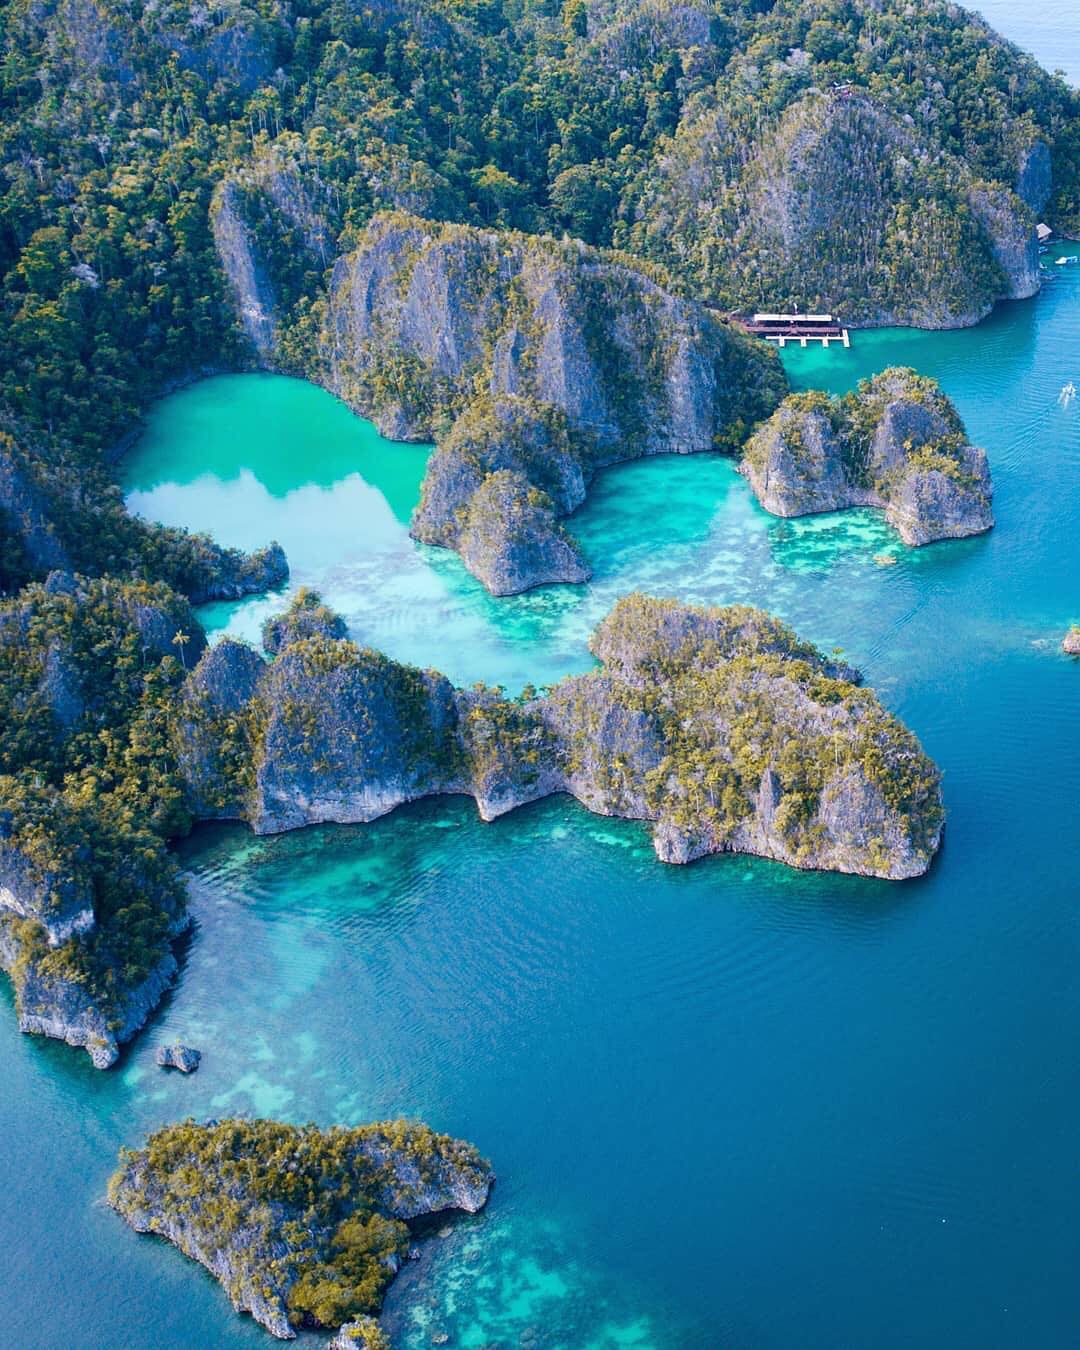 Kepulauan Raja Ampat Papua Barat